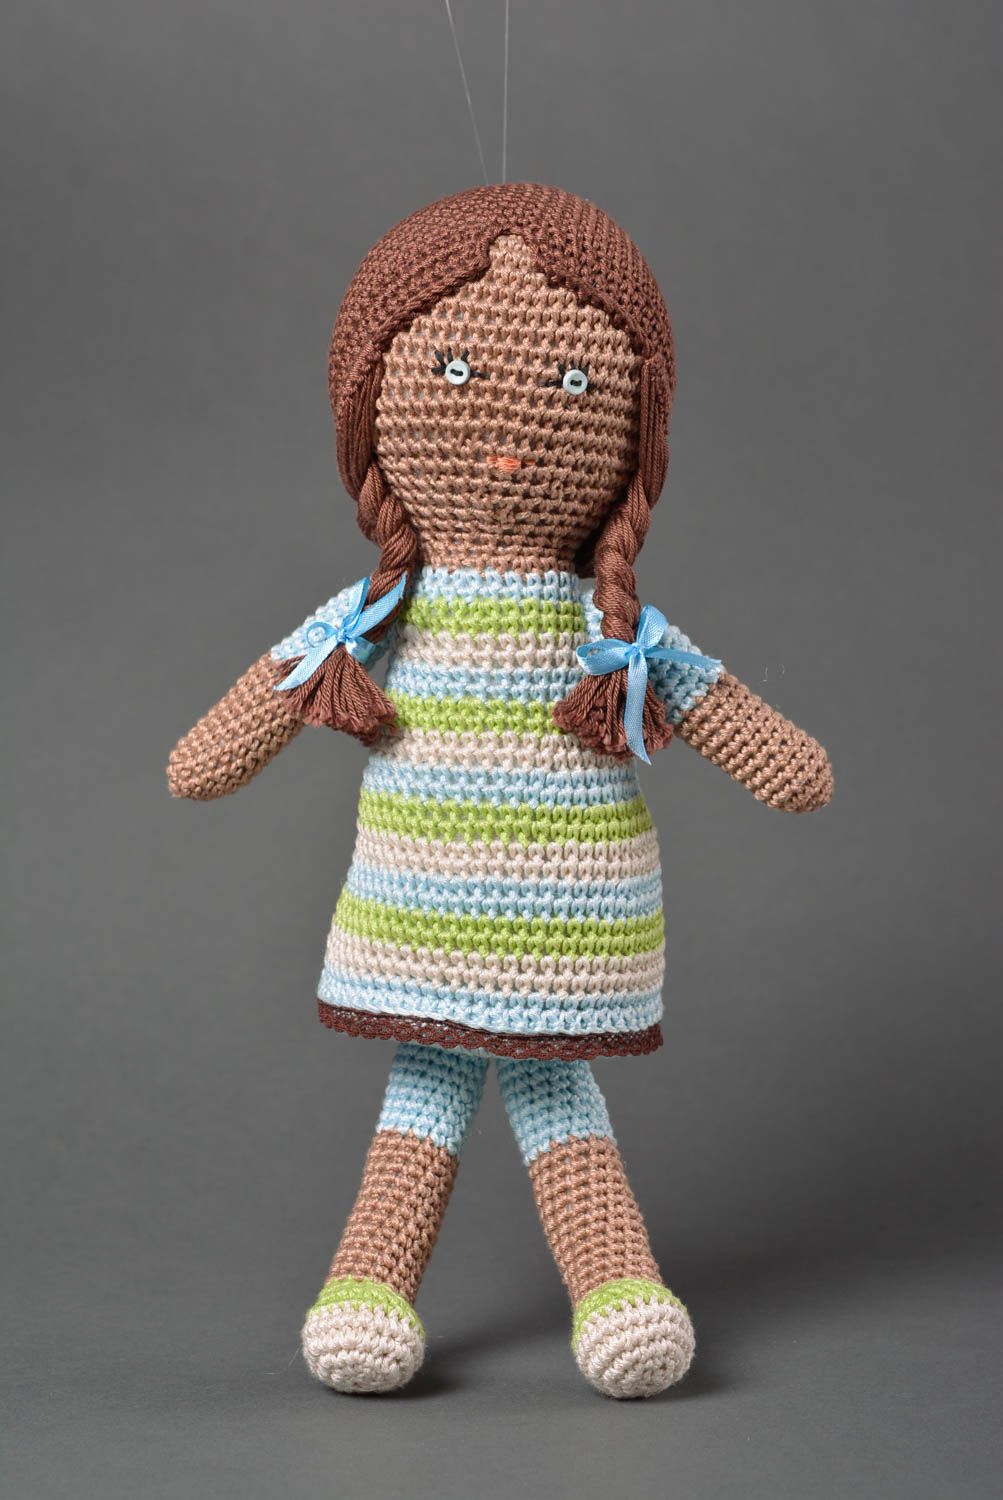 Handmade doll designer toy gift for children crocheted doll decor ideas photo 1